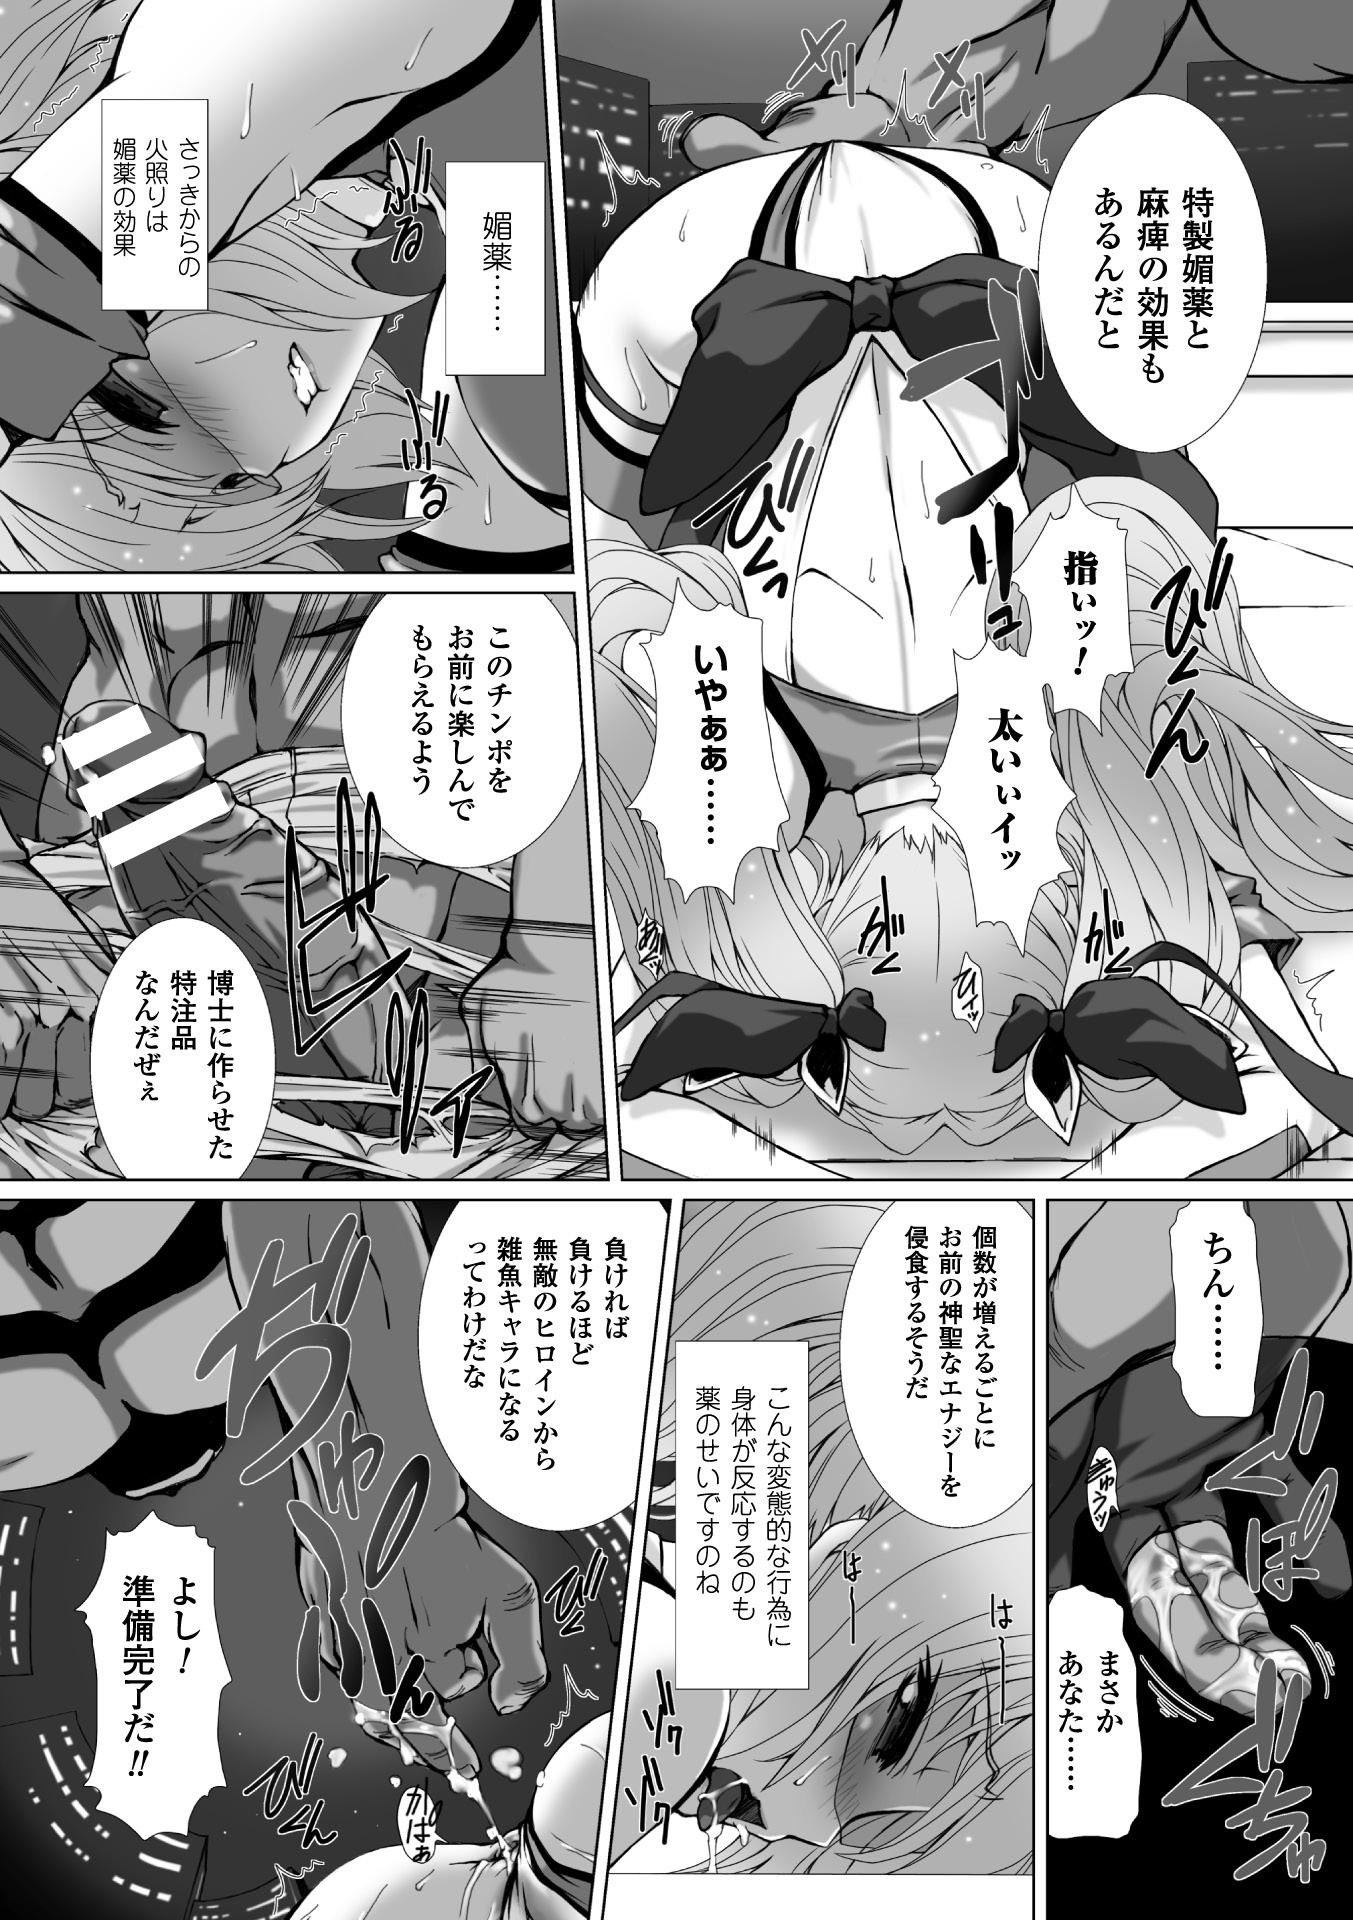 Seigi no Heroine Kangoku File Vol. 3 13